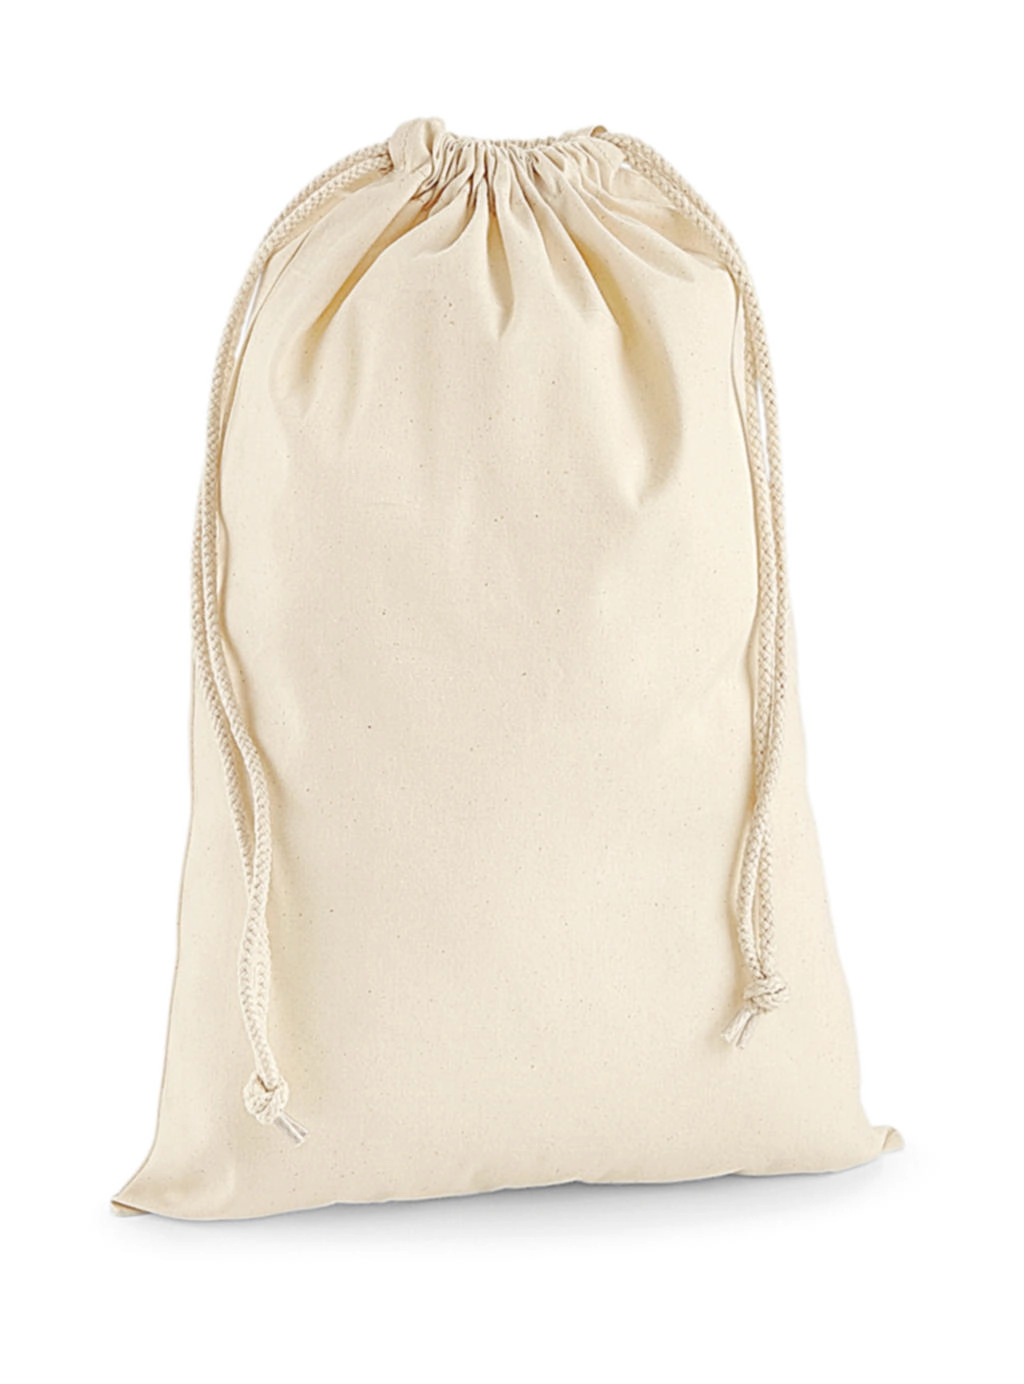 Premium Cotton Stuff Bag zum Besticken und Bedrucken in der Farbe Natural mit Ihren Logo, Schriftzug oder Motiv.